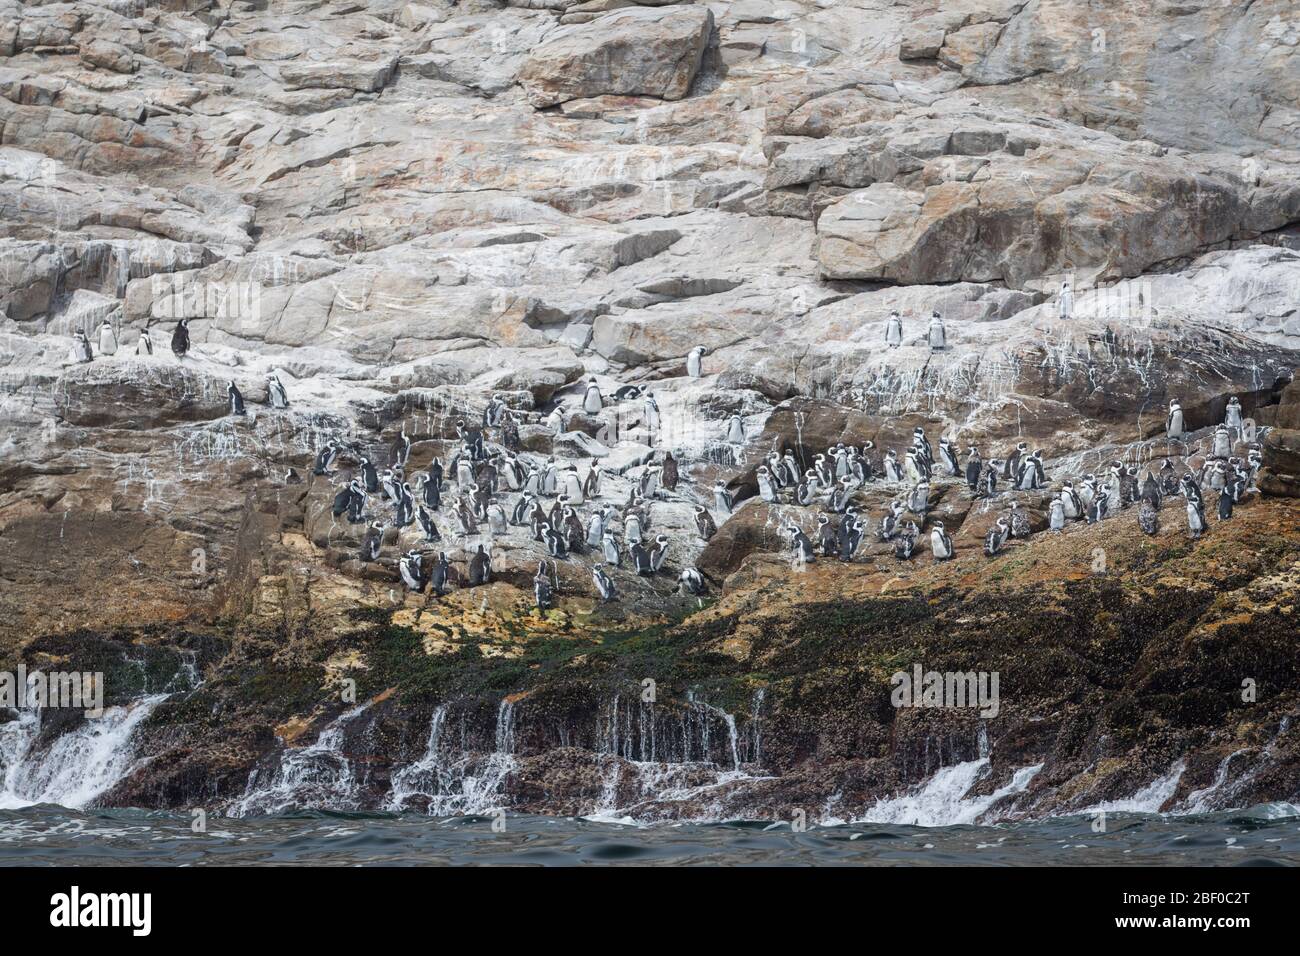 La isla de Saint Croix en la bahía de Algoa, la bahía de Nelson Mandela, Port Elizabeth, Sudáfrica, es la colonia de cría más grande de pingüinos africanos en peligro de extinción Foto de stock